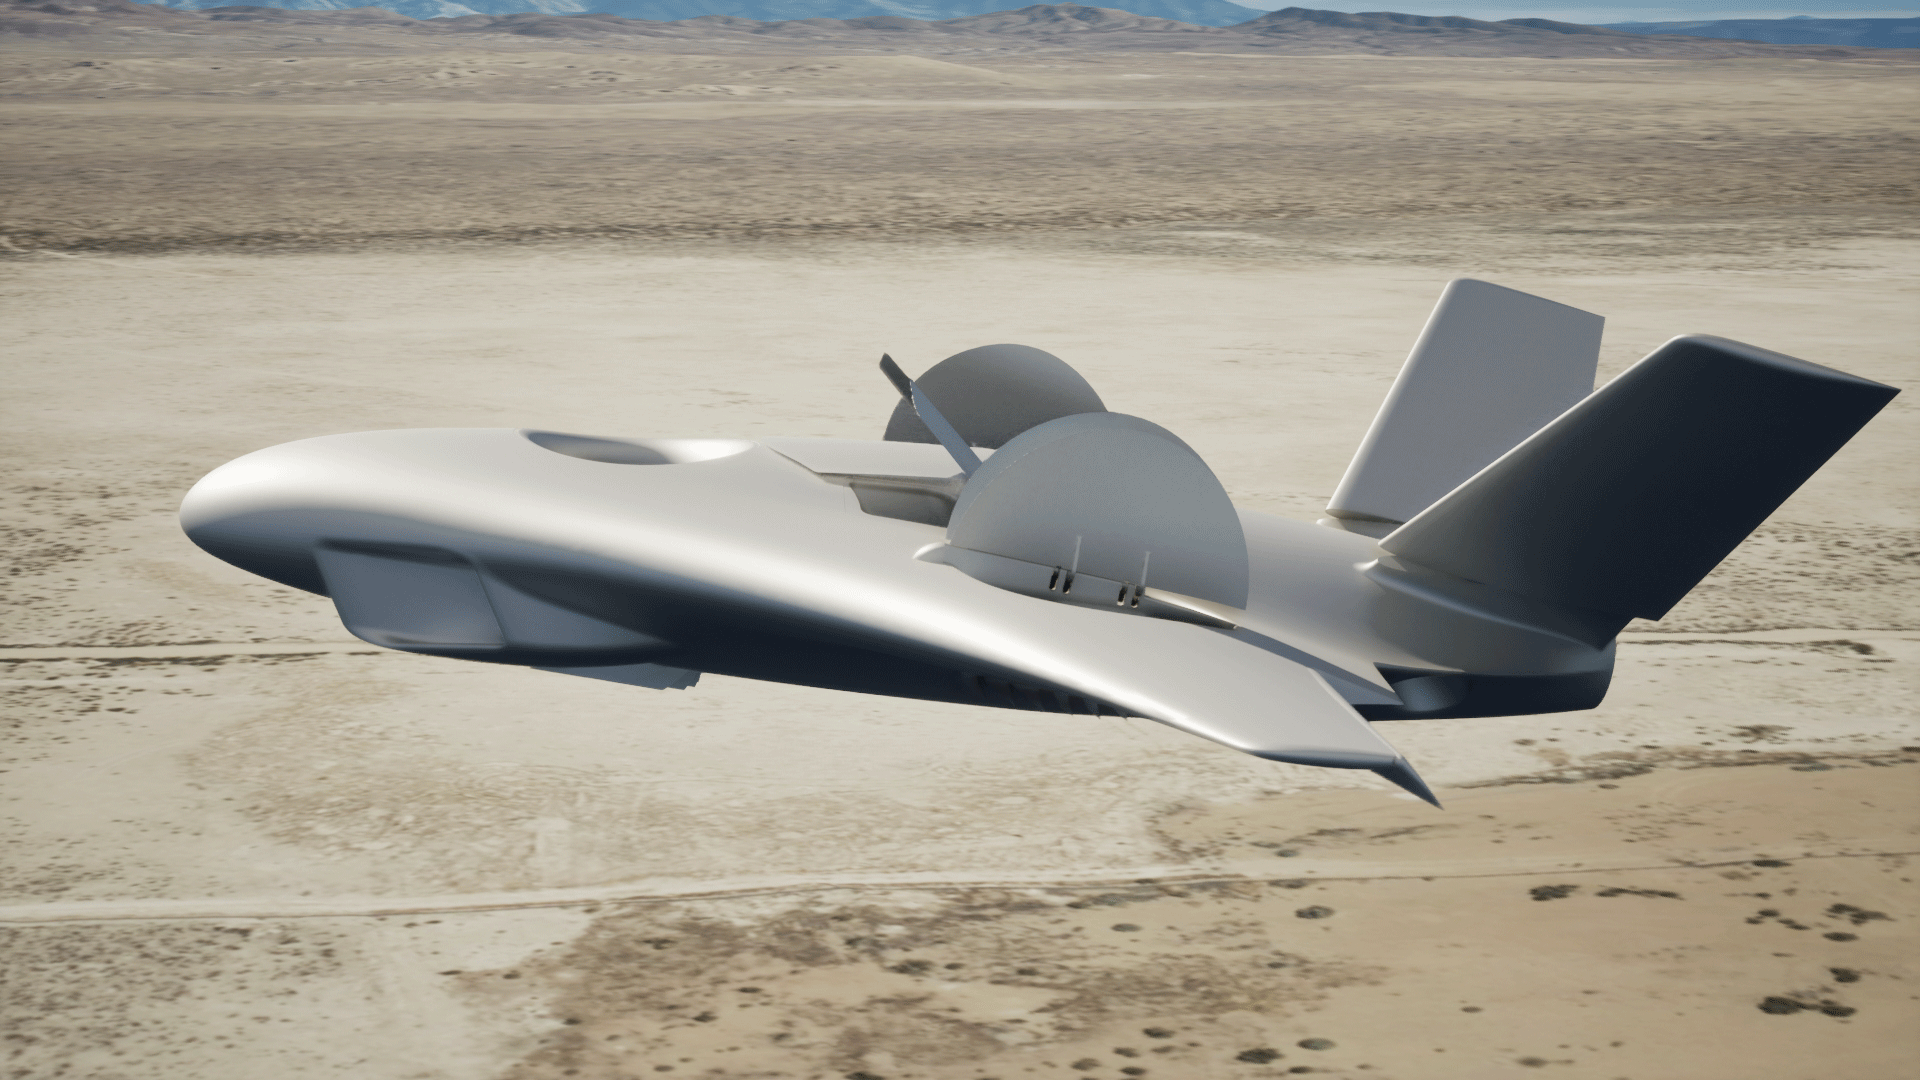 Aurora’s Latest X-Plane Design Speeds Ahead